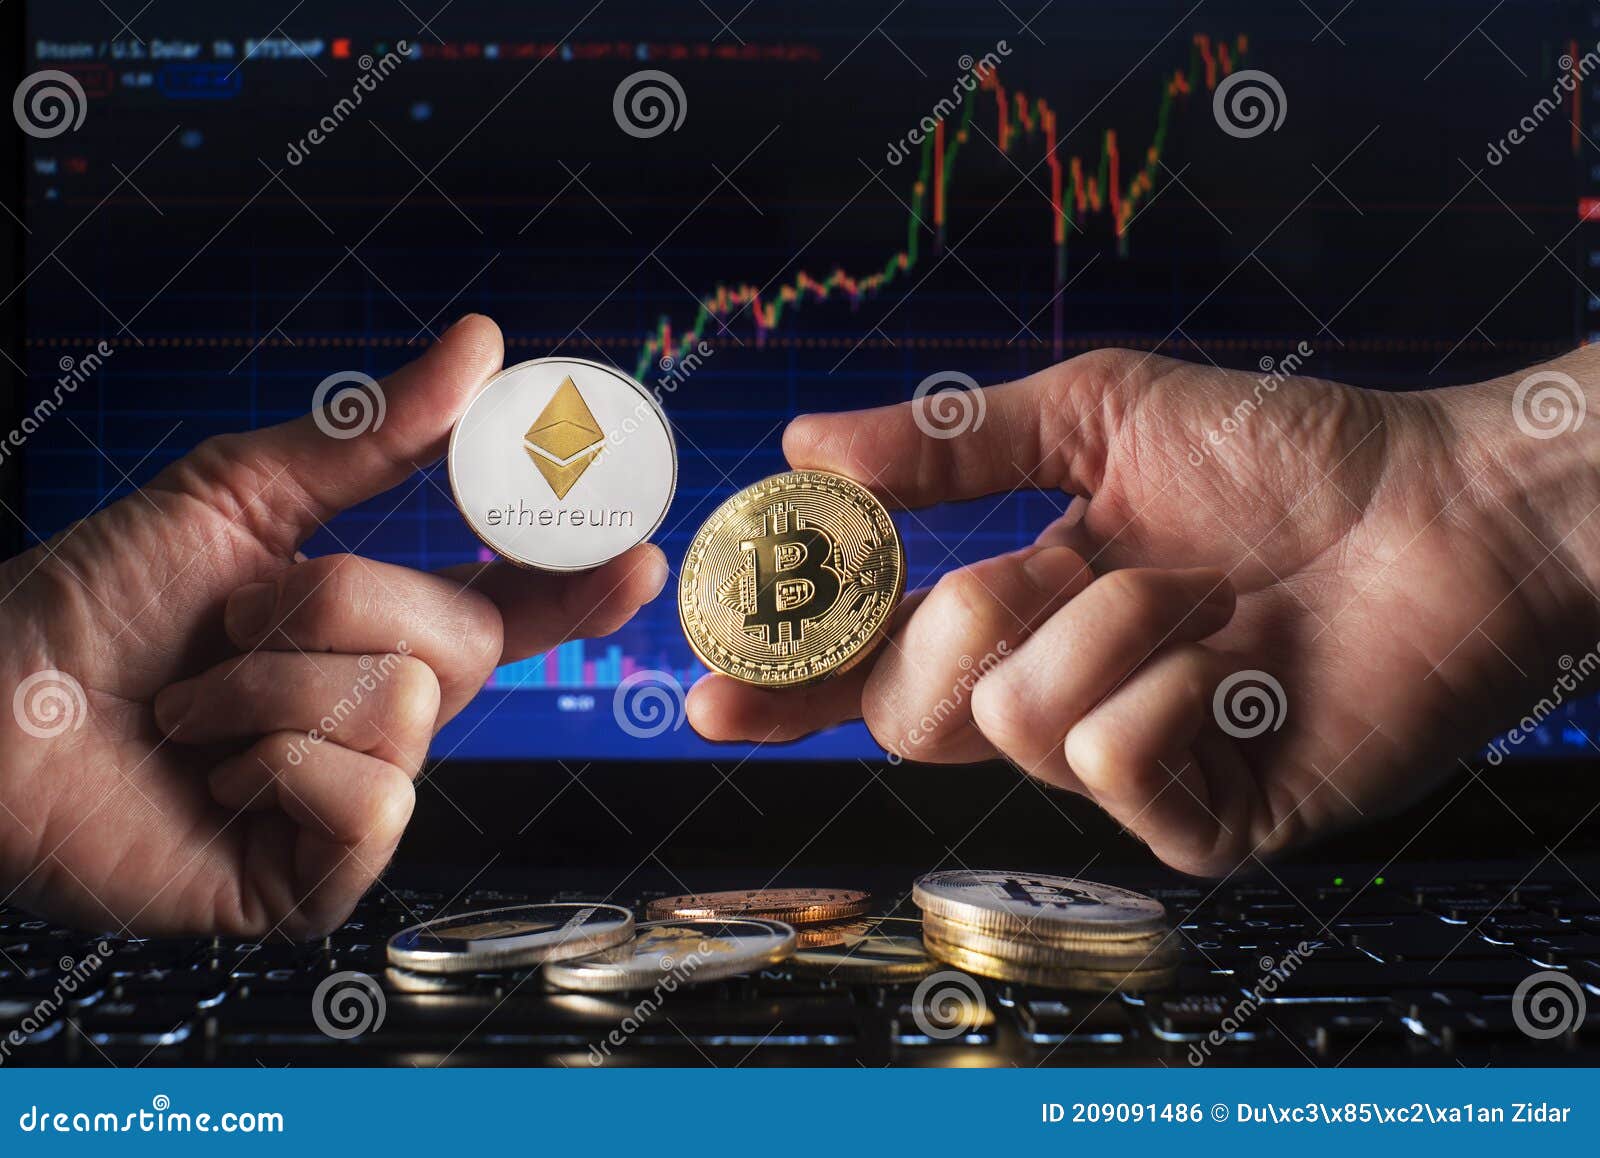 trading con bitcoin o ethereum